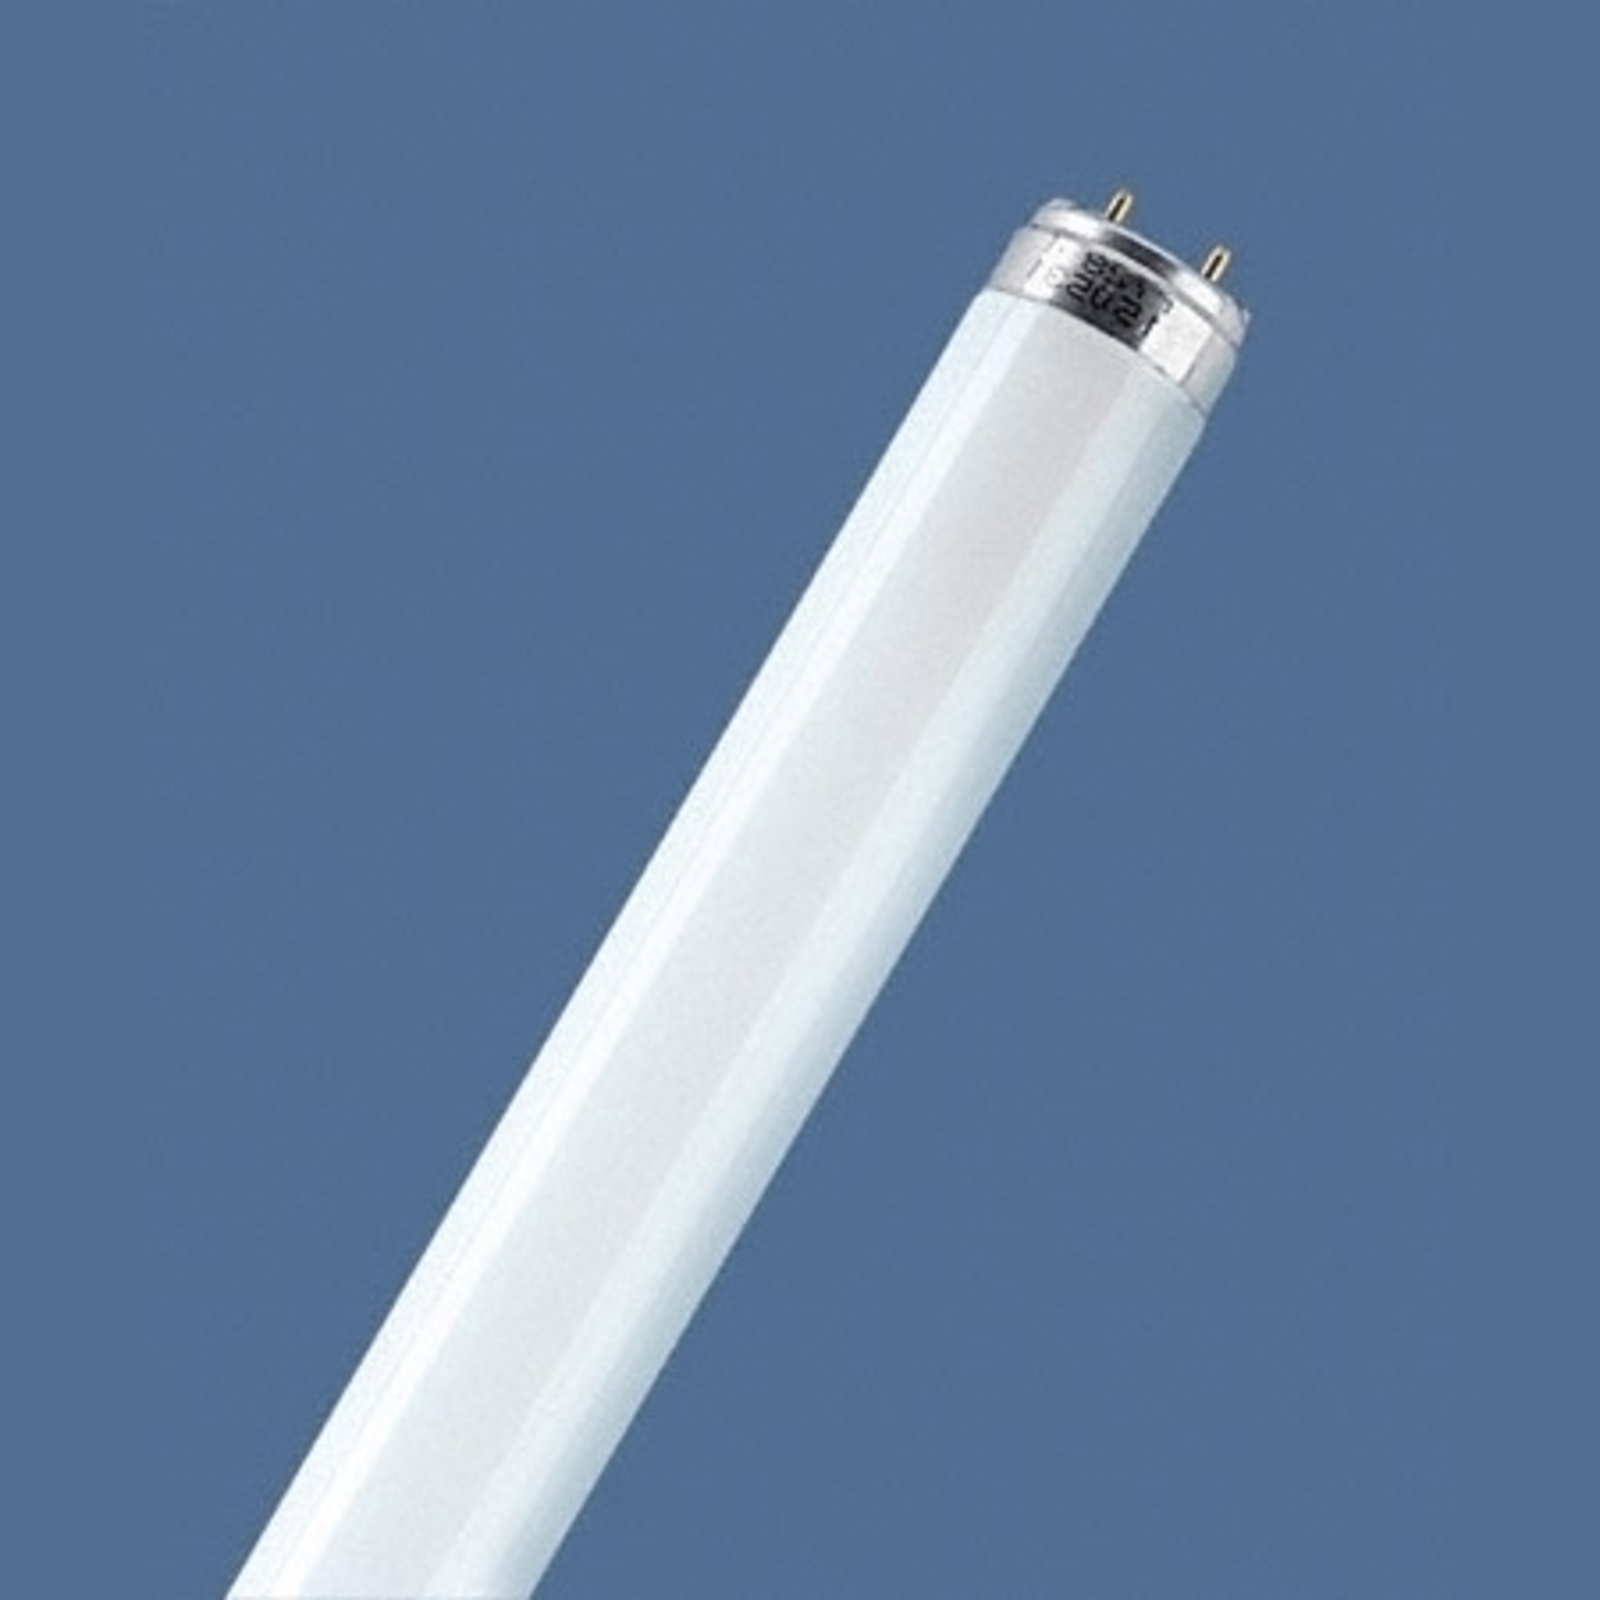 Fluoreszkáló cső G13 T8 36W 827 Lumilux